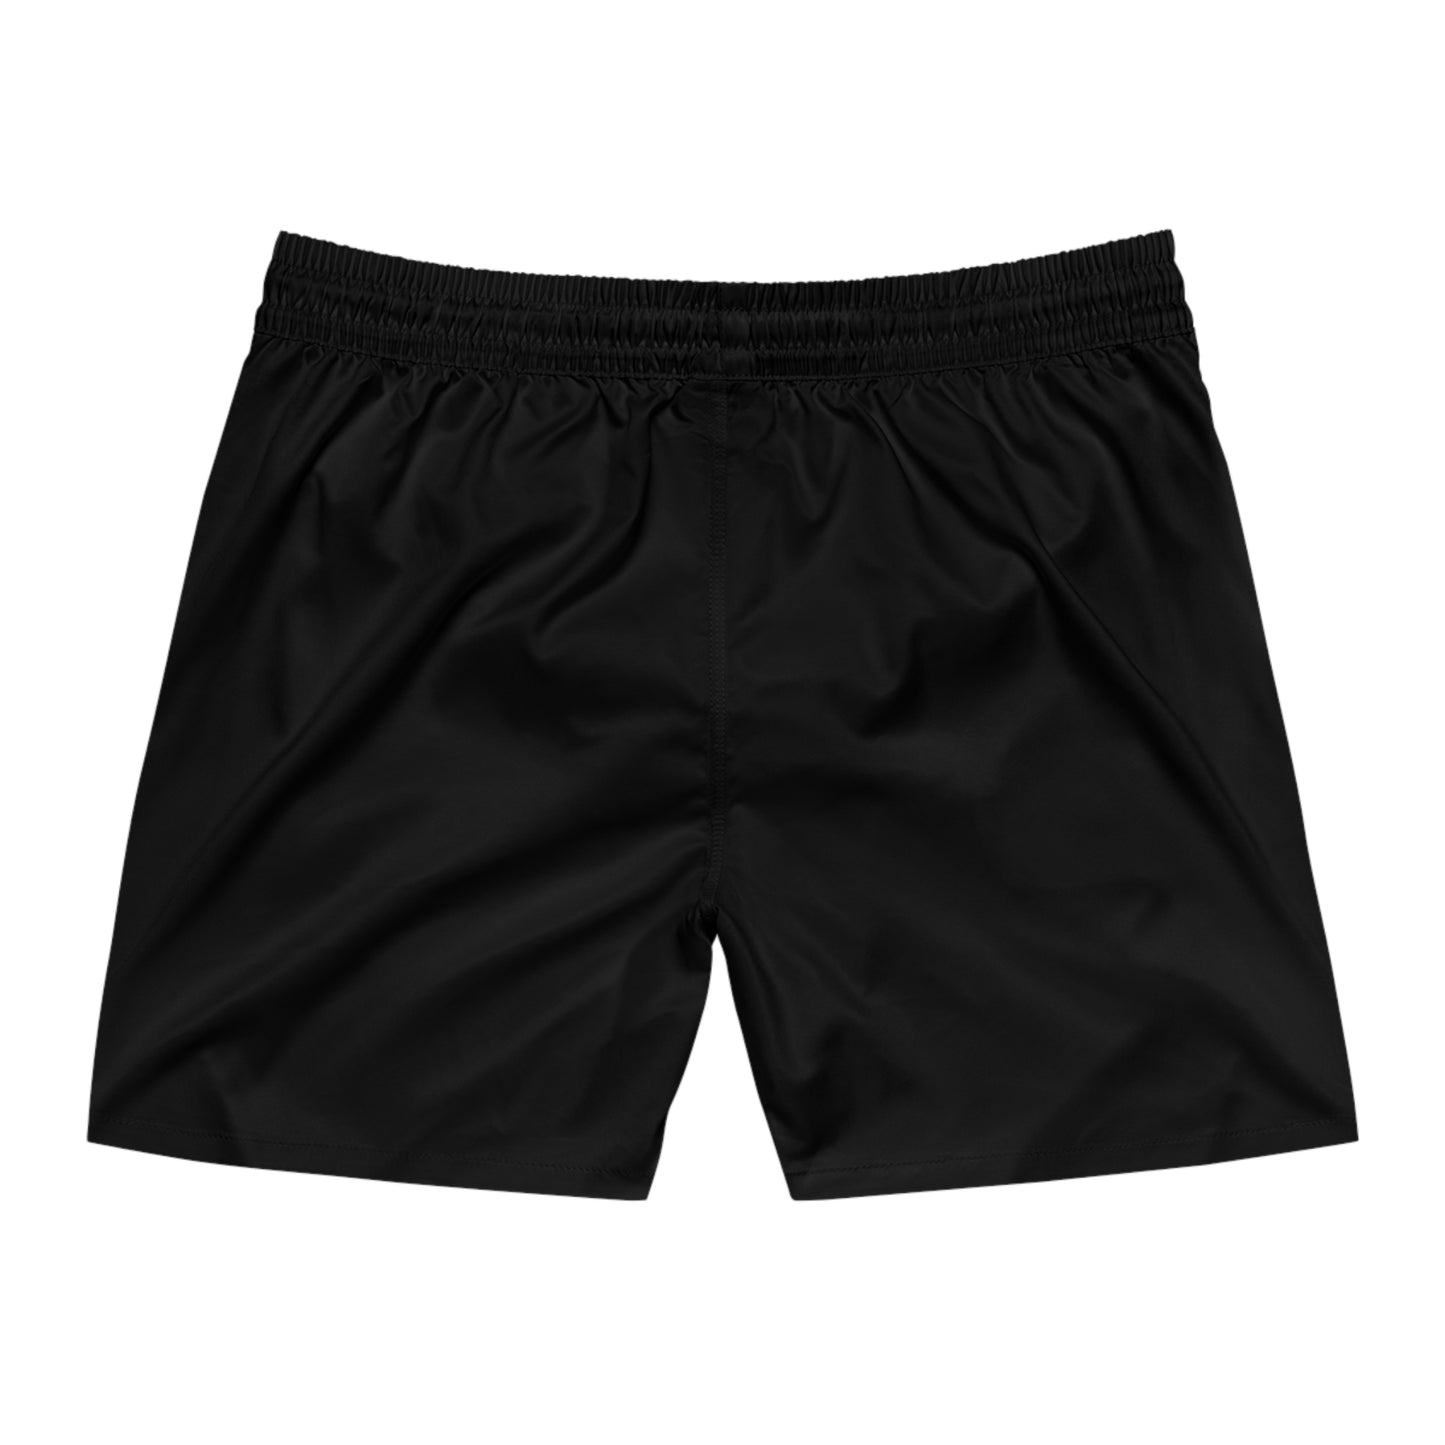 Maryland Shorts